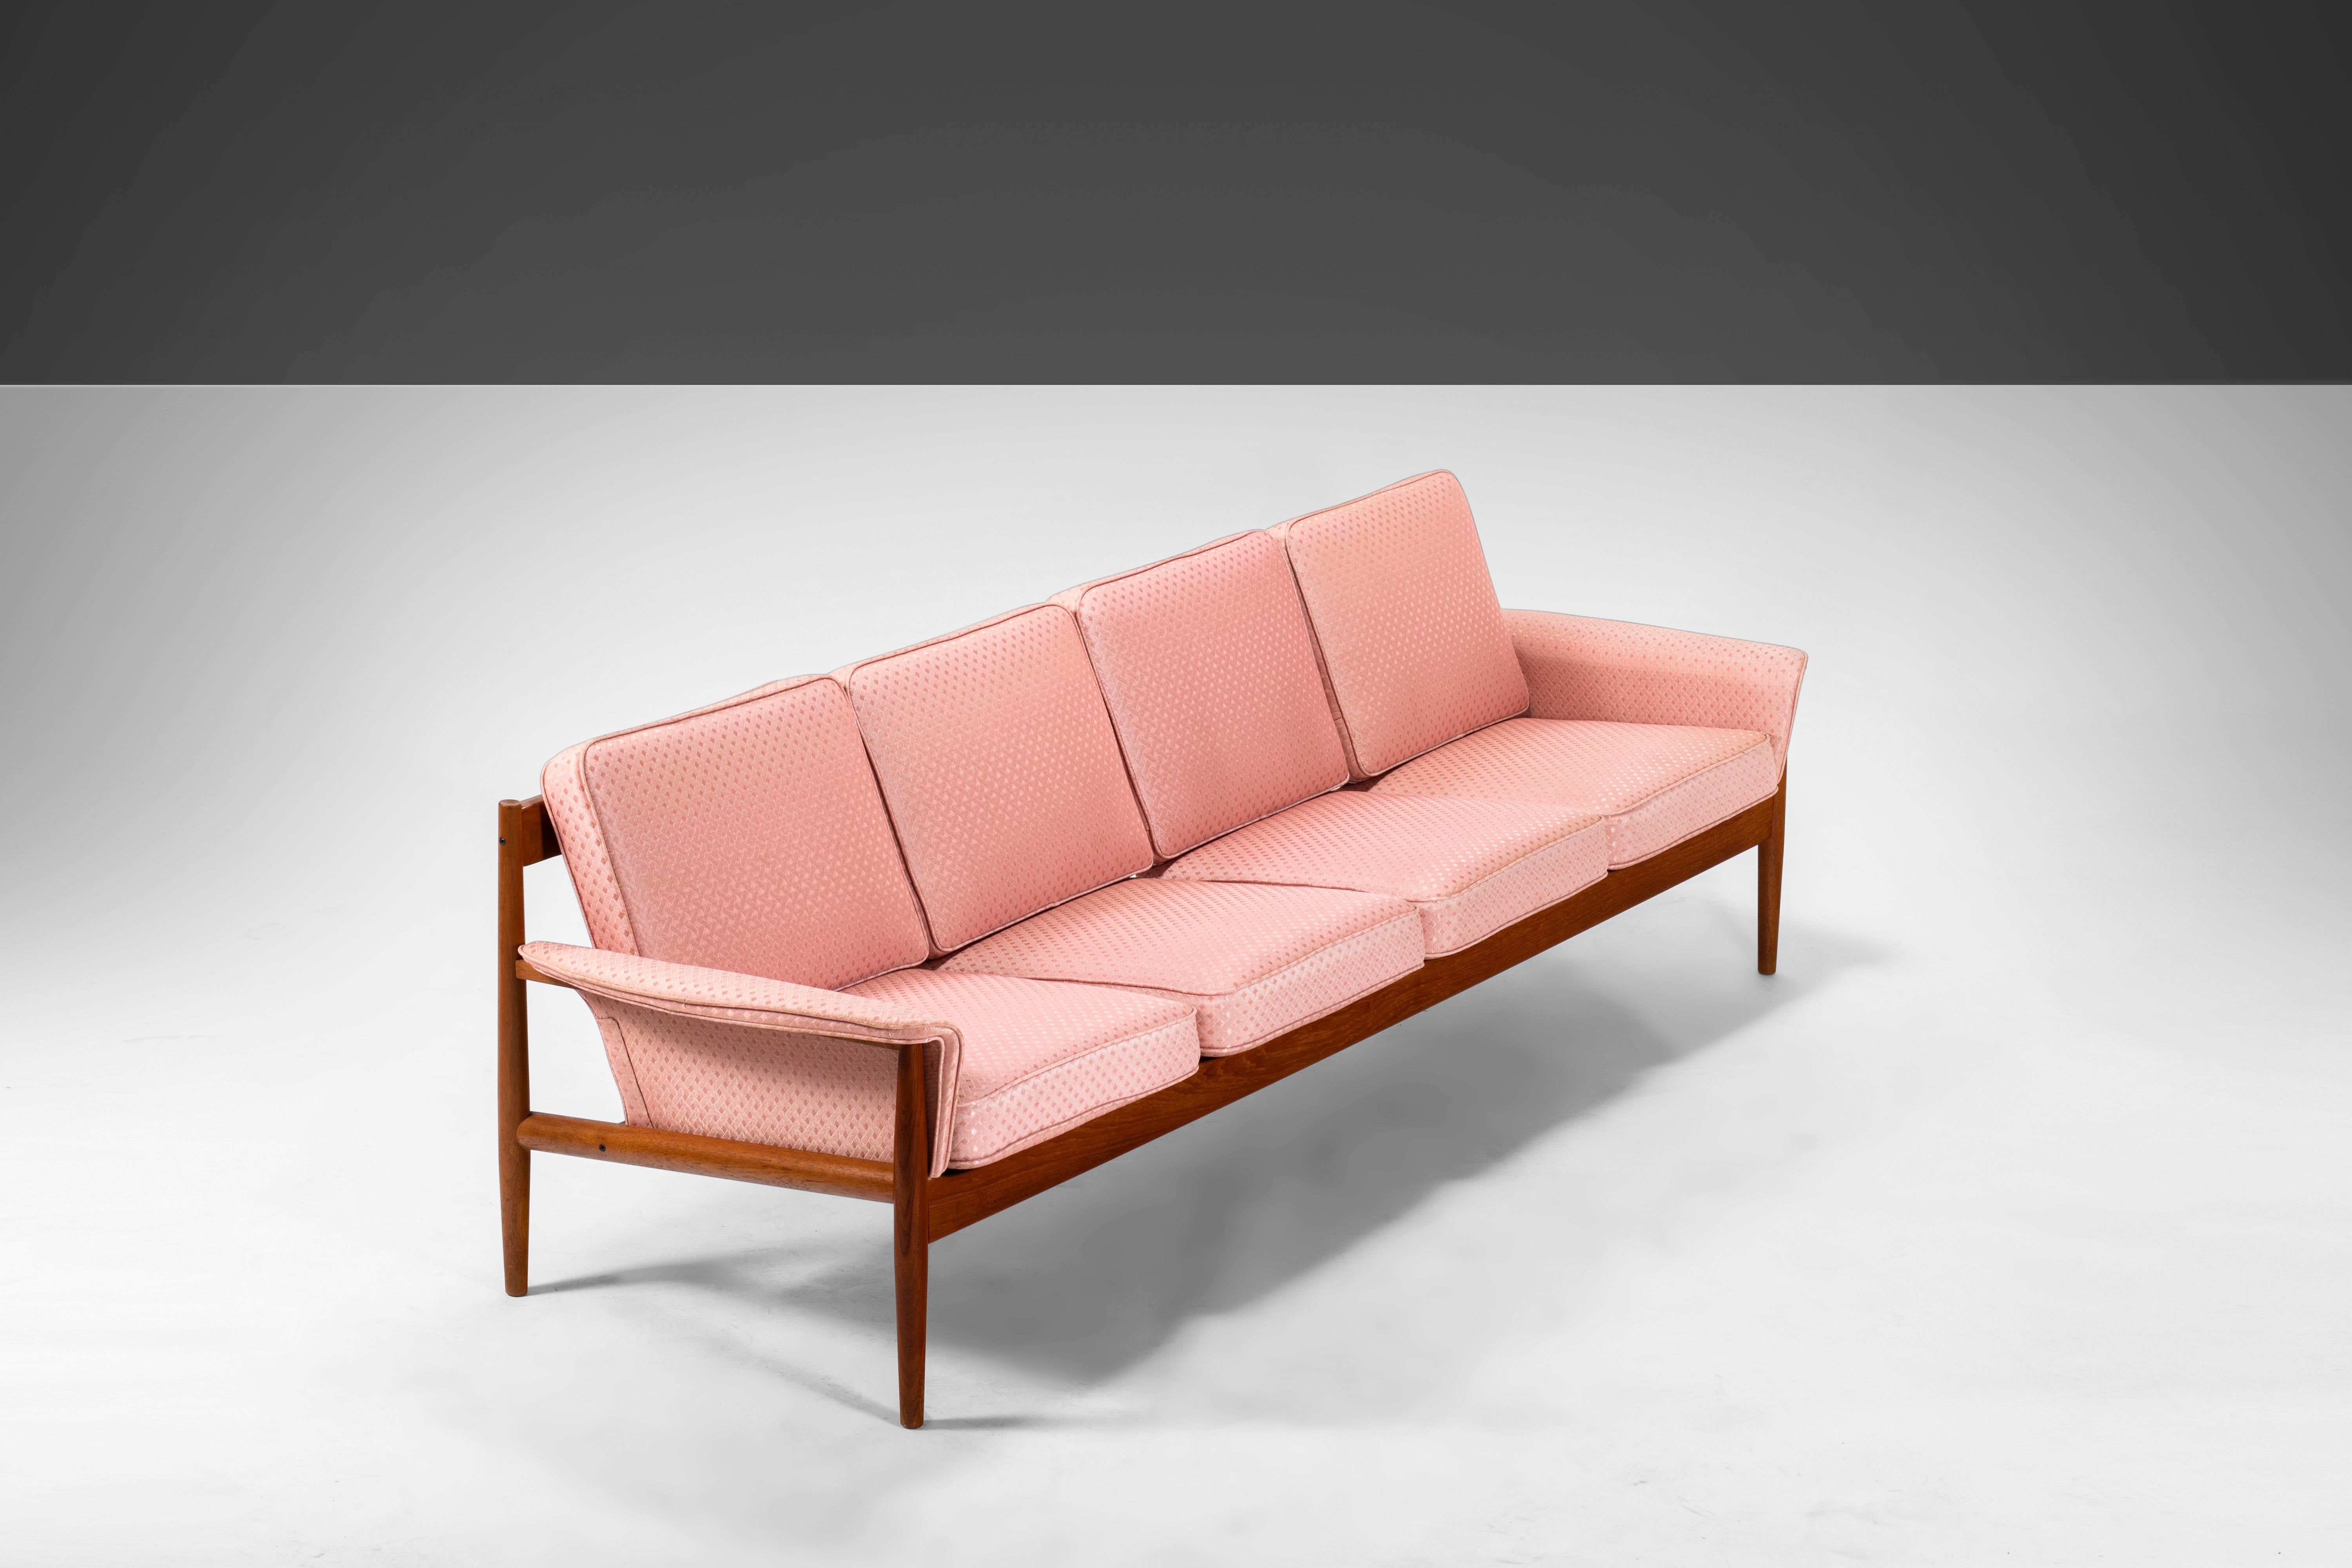 8 Ft. Langes Viersitzer-Sofa von Grete Jalk für France and Sons aus Teakholz, ca. 1960er Jahre (Skandinavische Moderne) im Angebot